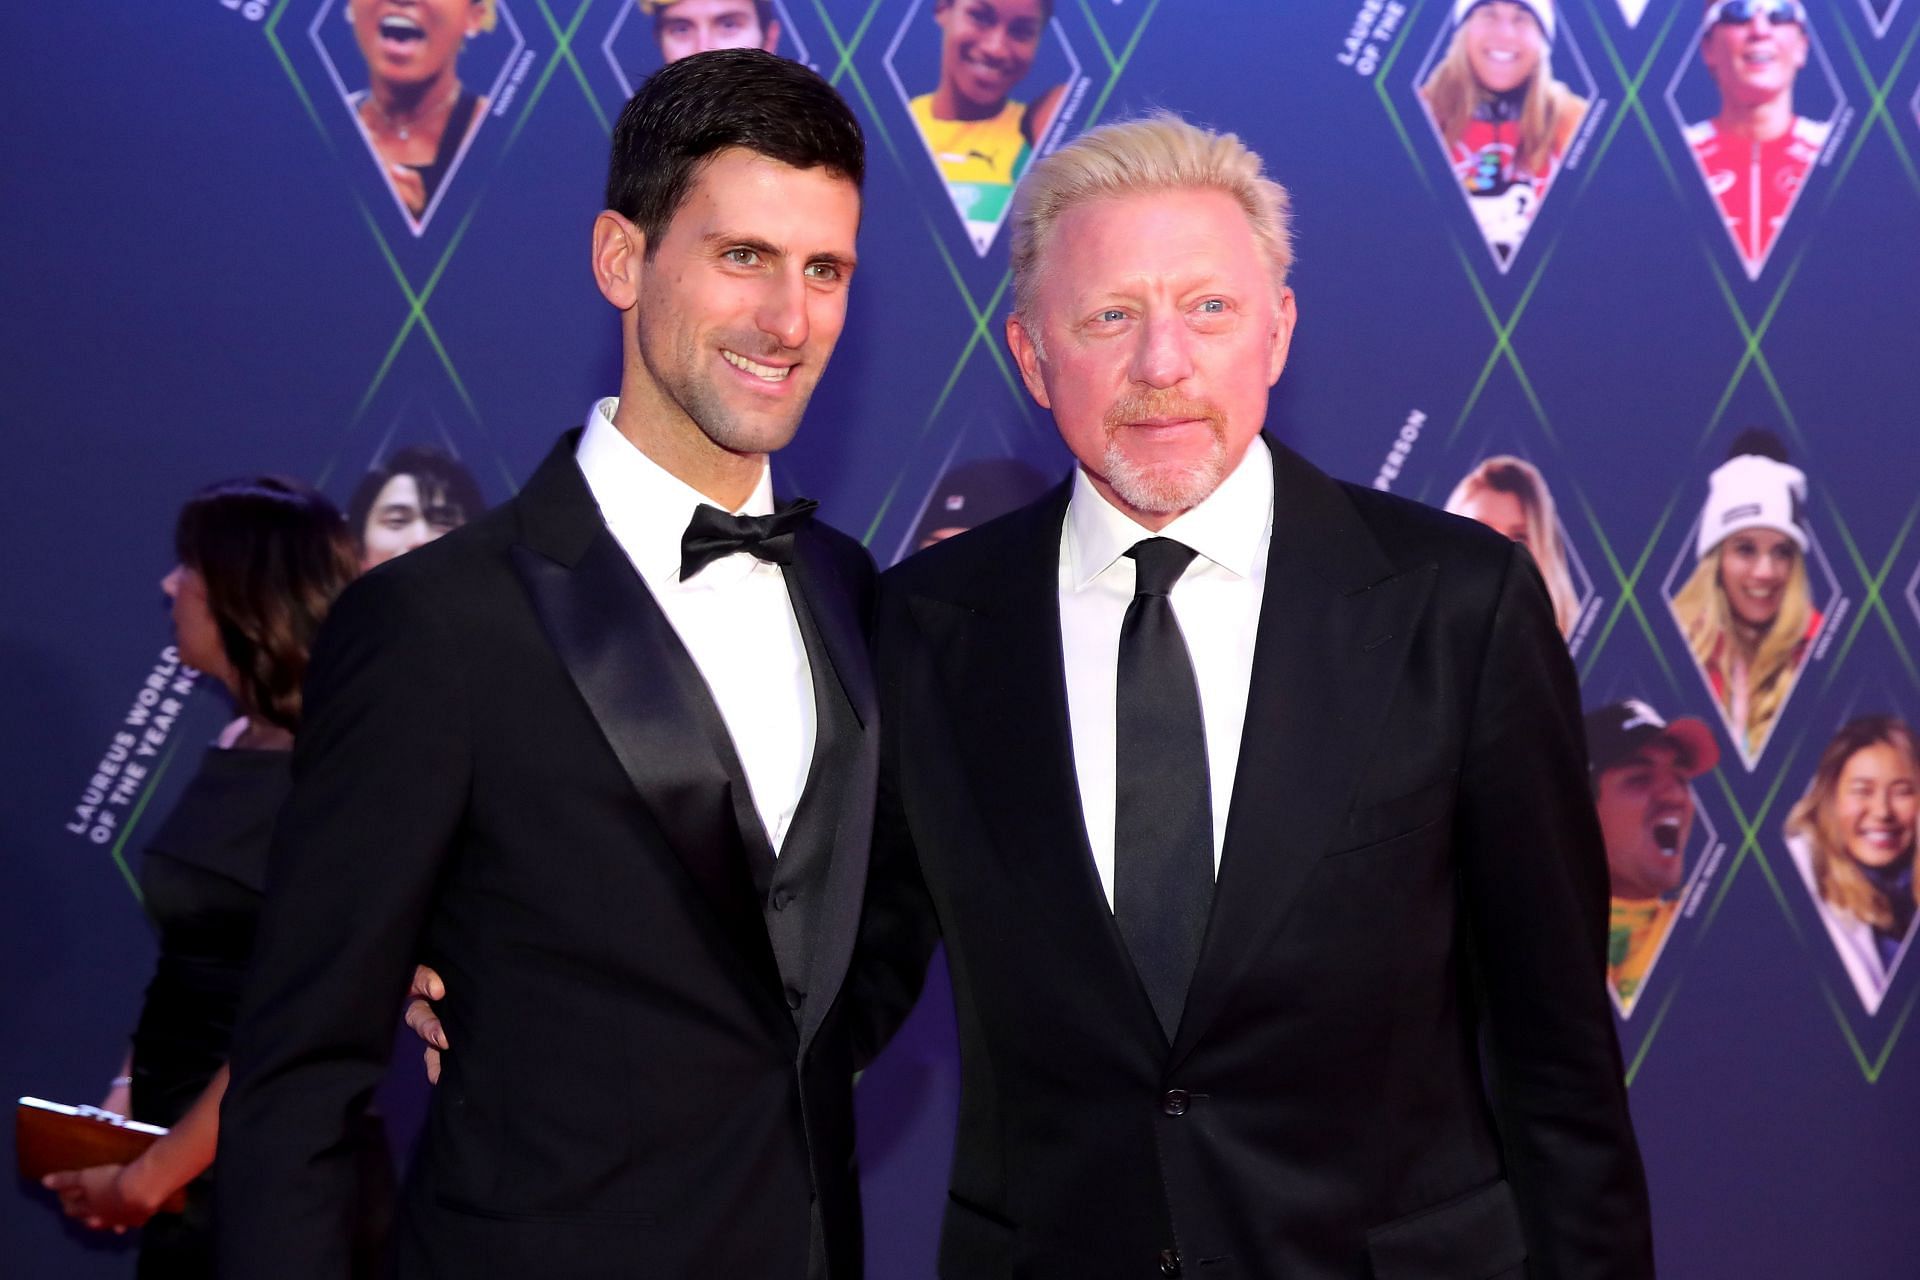 Novak Djokovic with Boris Becker at an event